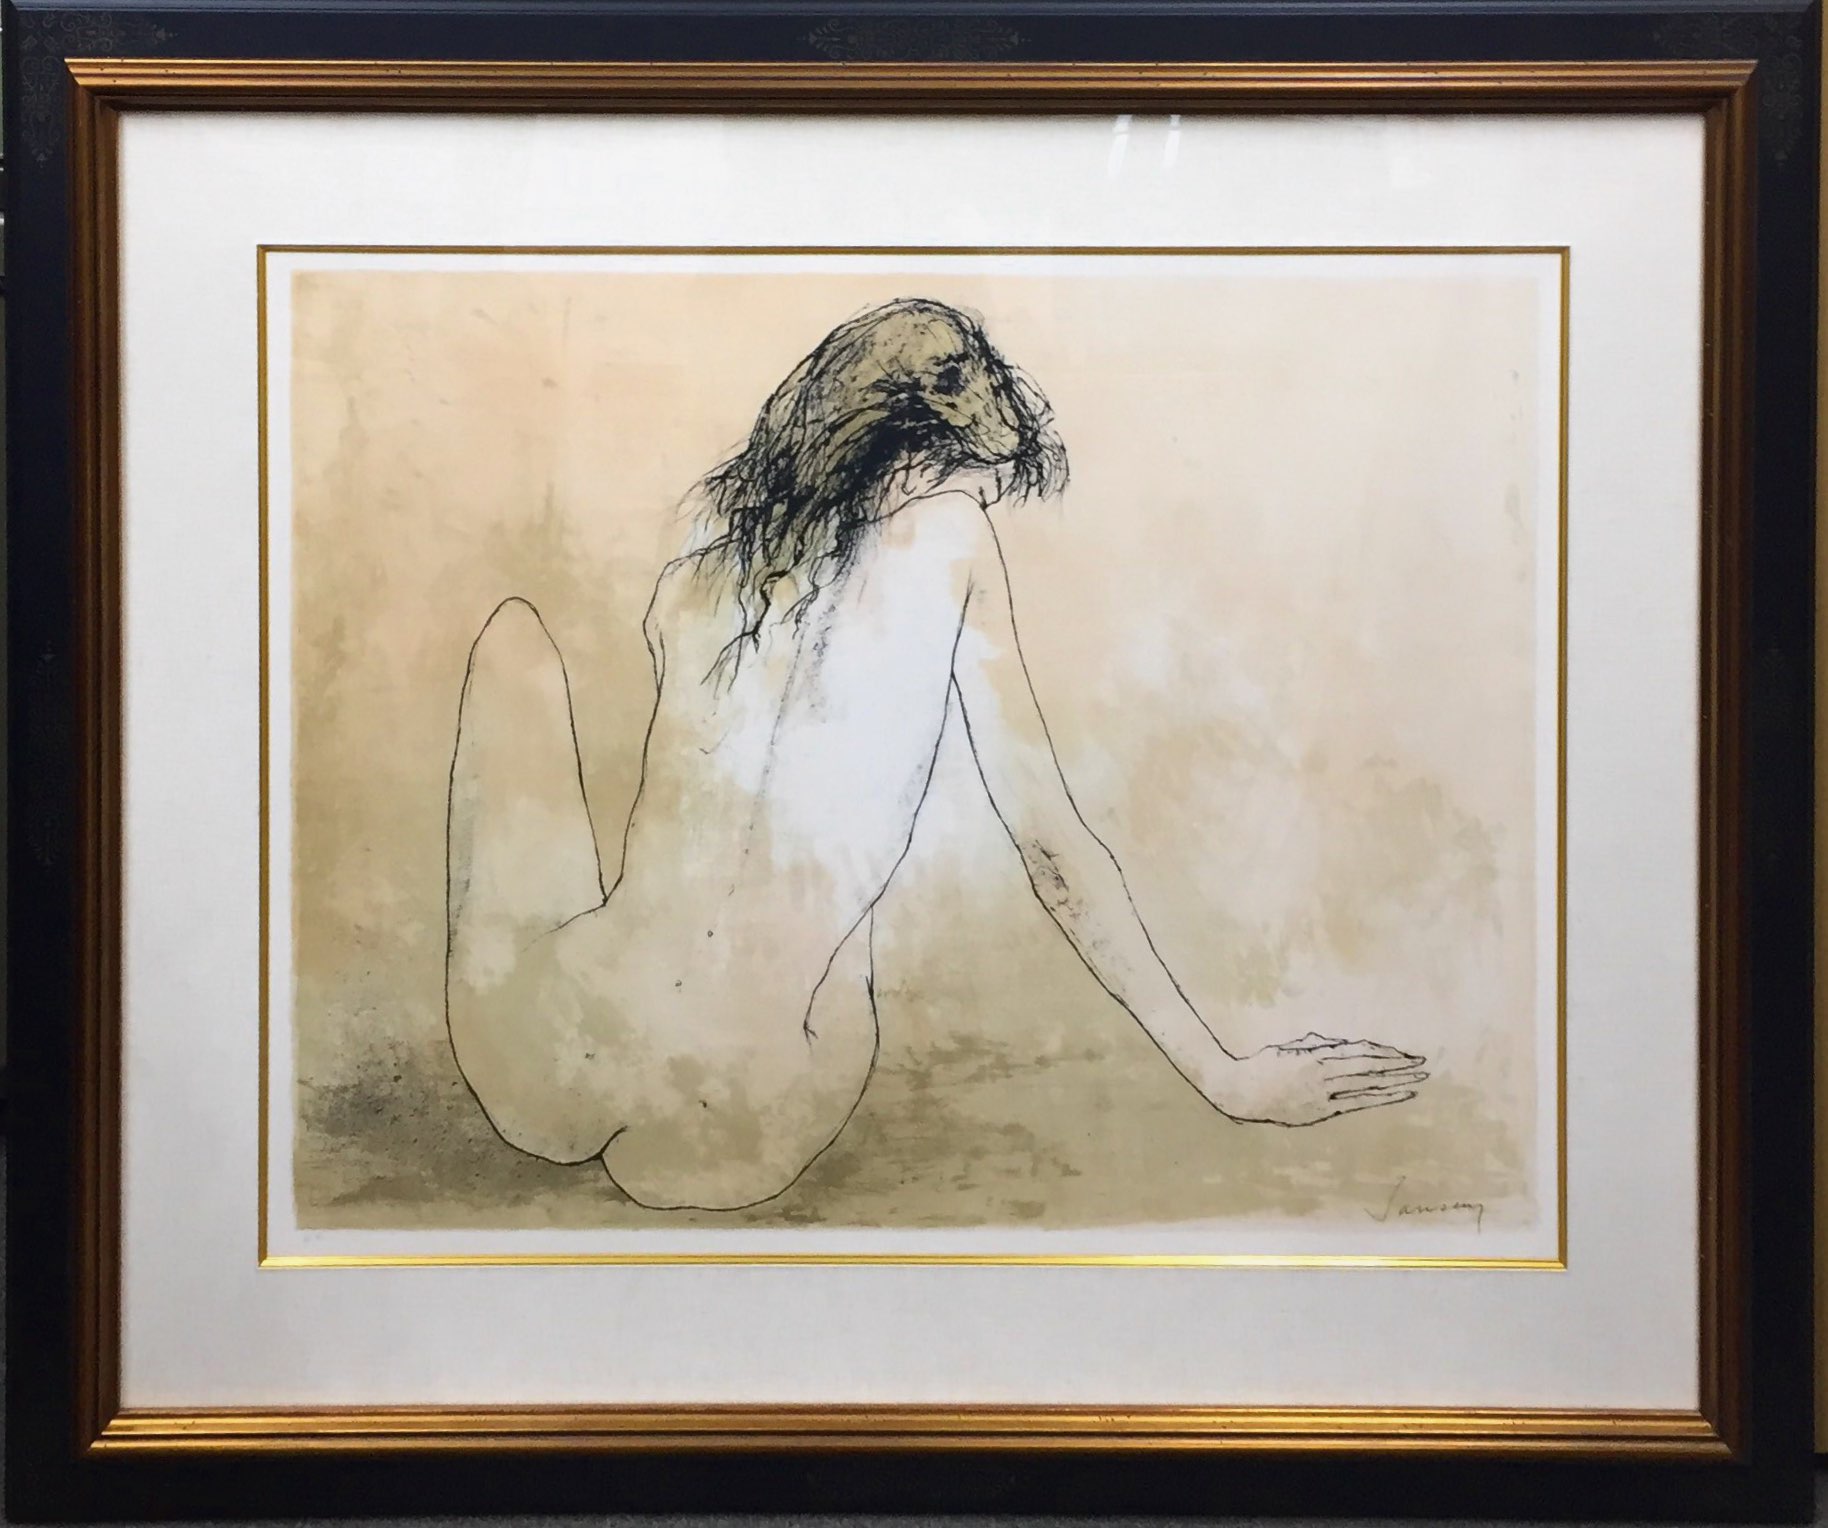 ジャンセン「後ろ向きの裸婦」（リトグラフ）51x67cm - 画廊アガティ